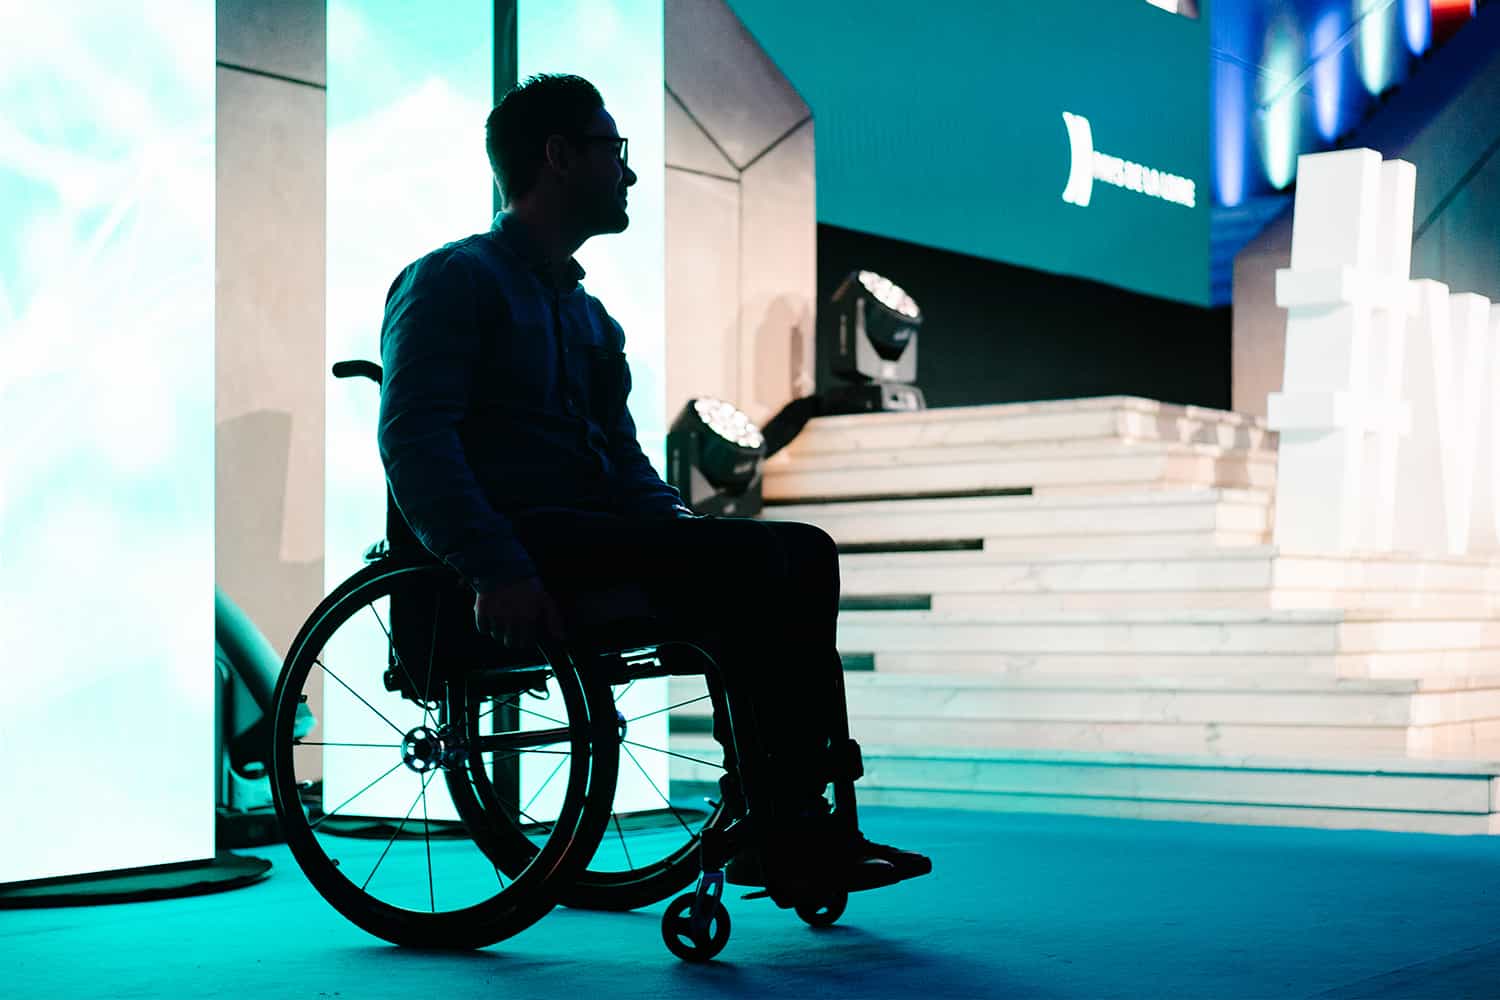 Morgan créateur de gaspard : dispositif anti-escarre sous coussin anti-escarre fauteuil roulant